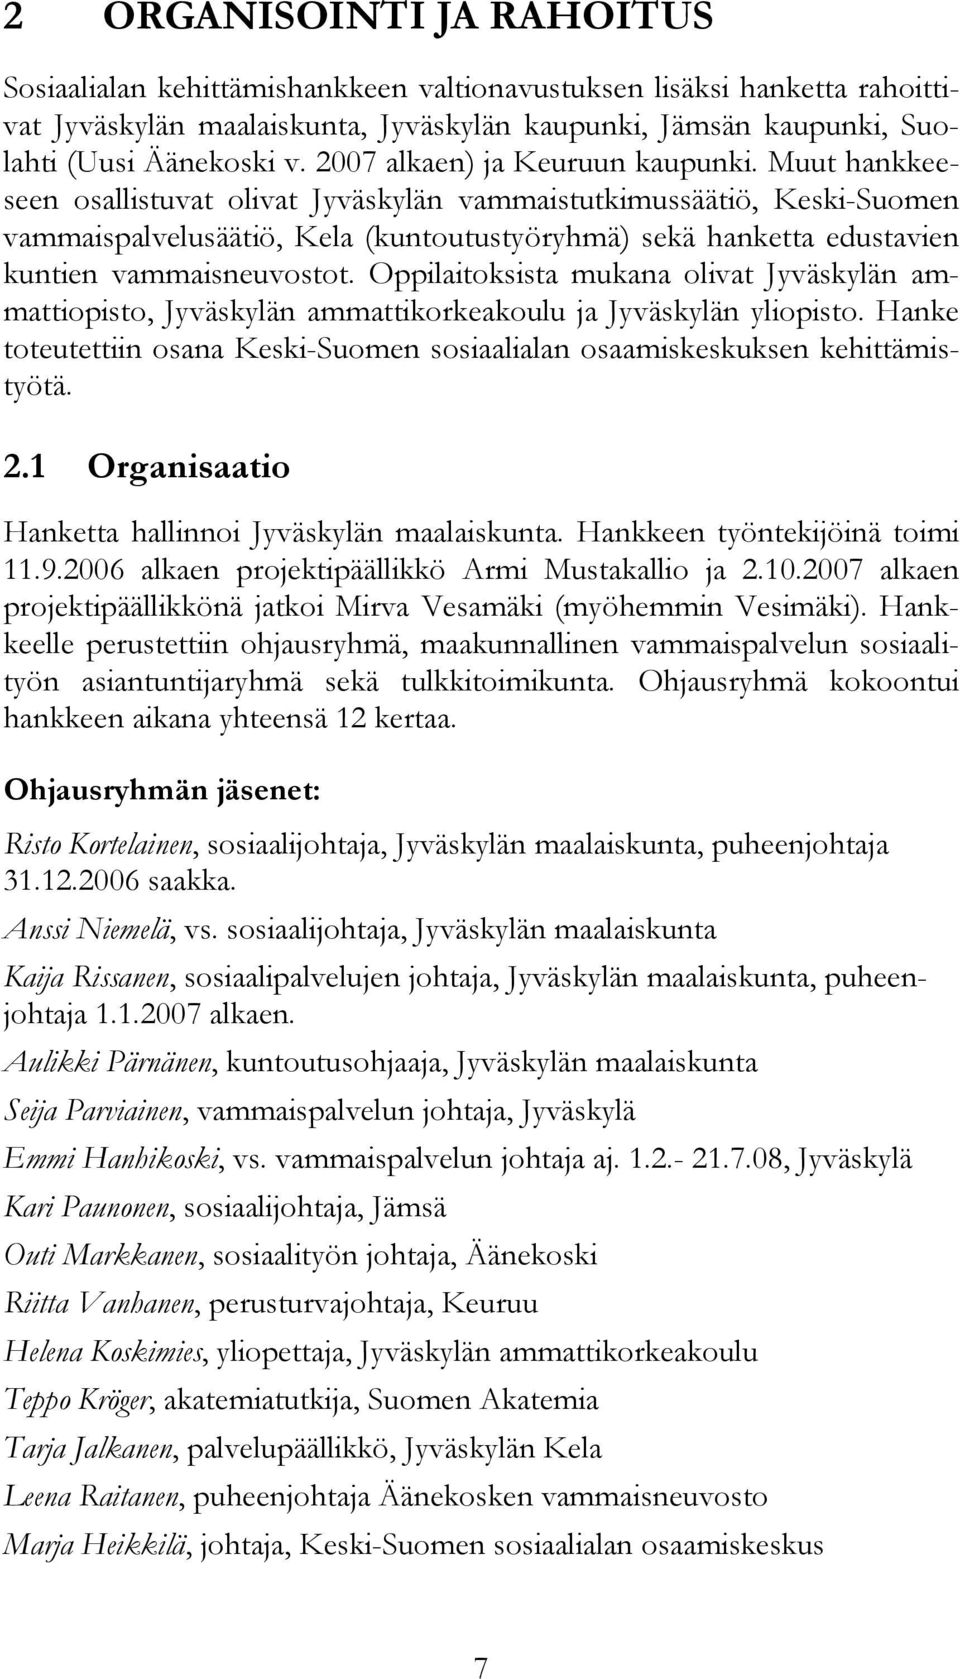 Muut hankkeeseen osallistuvat olivat Jyväskylän vammaistutkimussäätiö, Keski-Suomen vammaispalvelusäätiö, Kela (kuntoutustyöryhmä) sekä hanketta edustavien kuntien vammaisneuvostot.